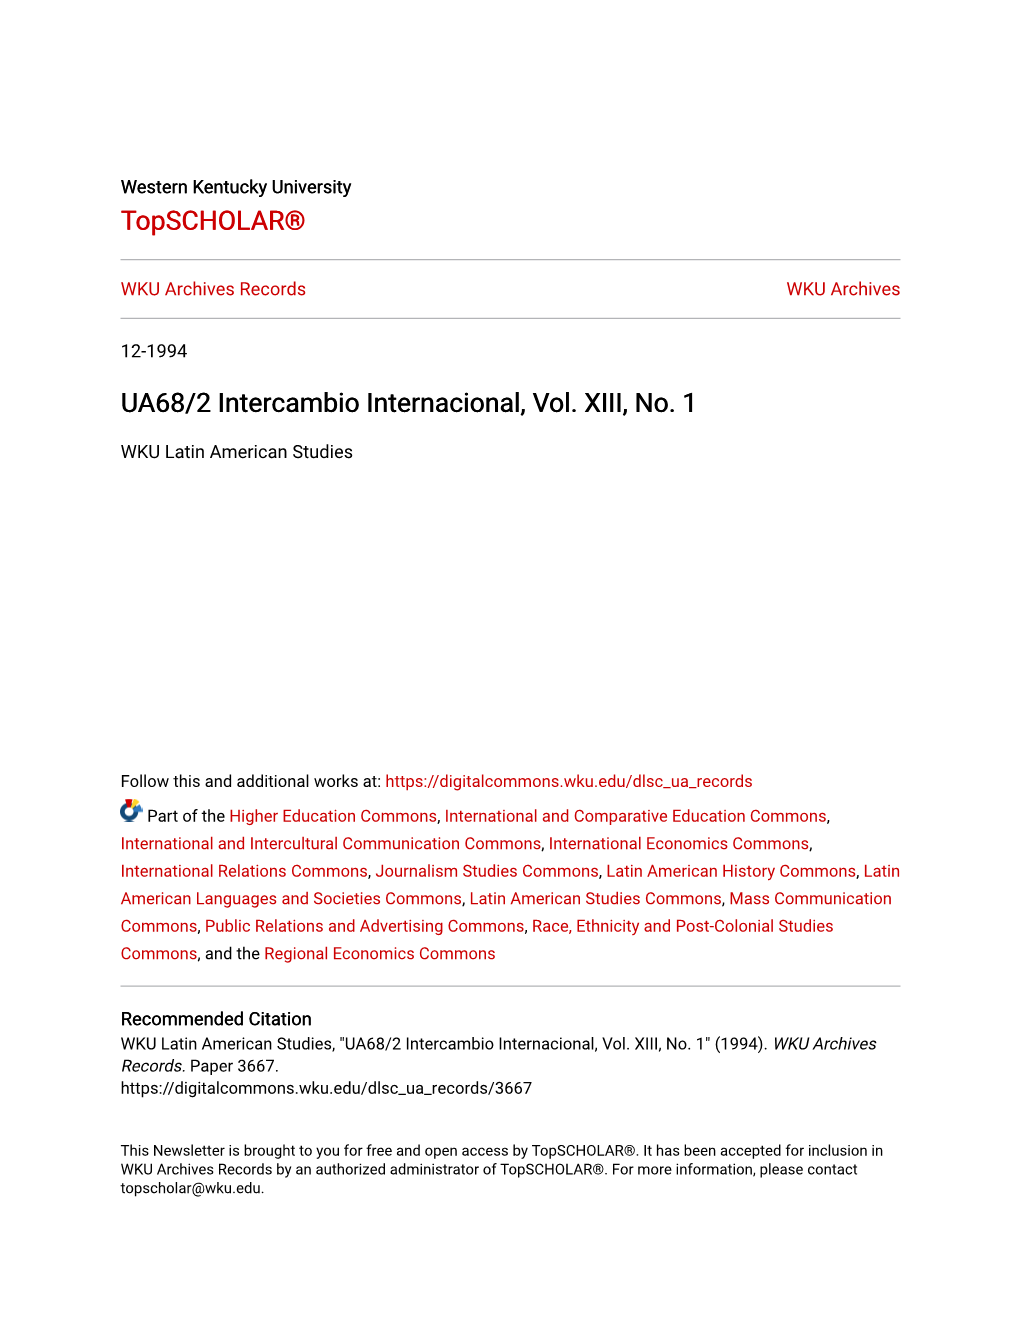 UA68/2 Intercambio Internacional, Vol. XIII, No. 1